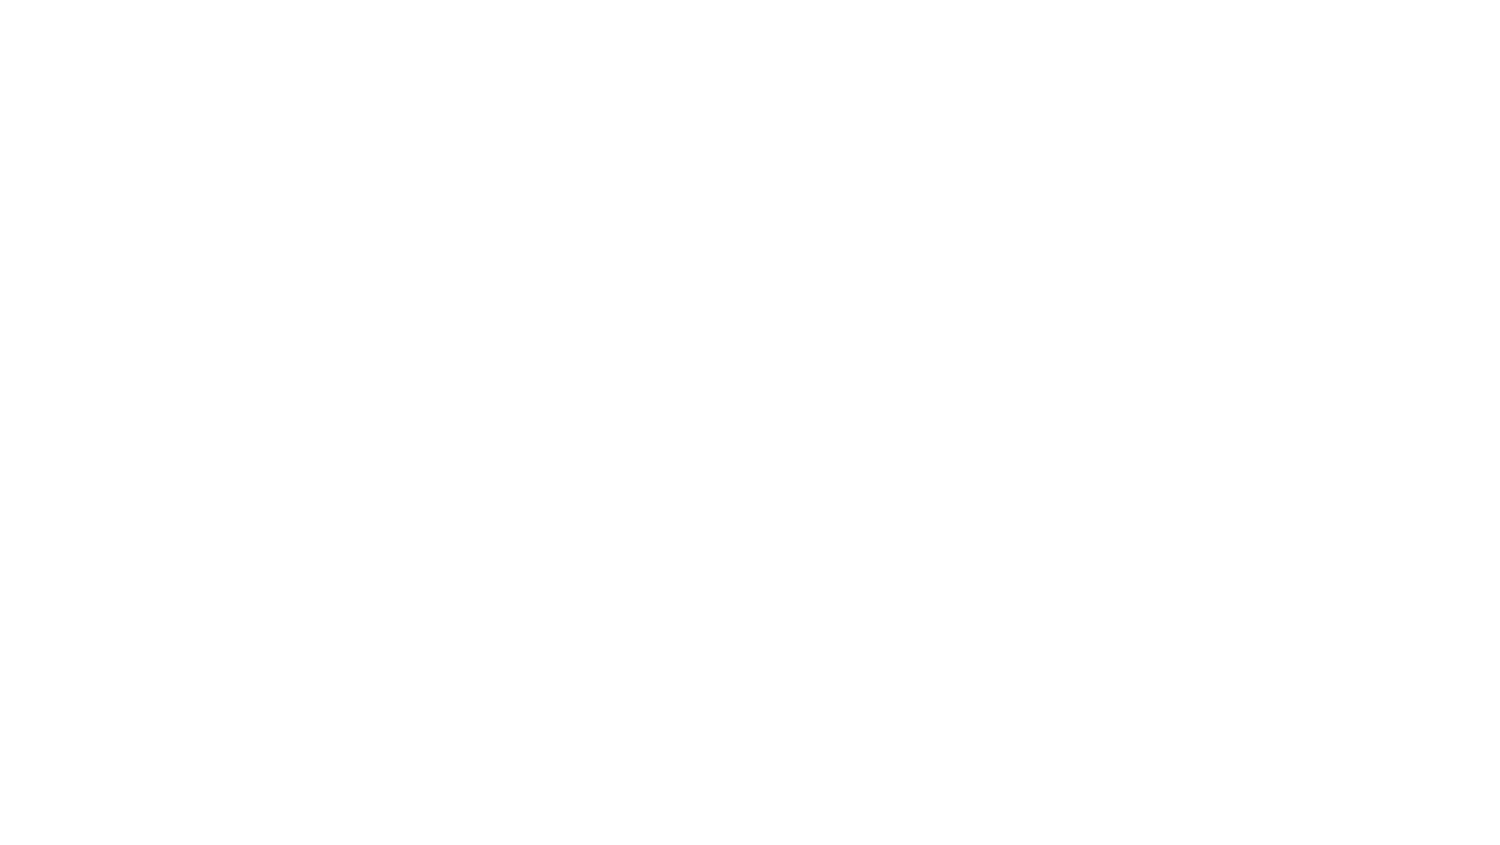 Terri Eisenhauer Signature Properties 